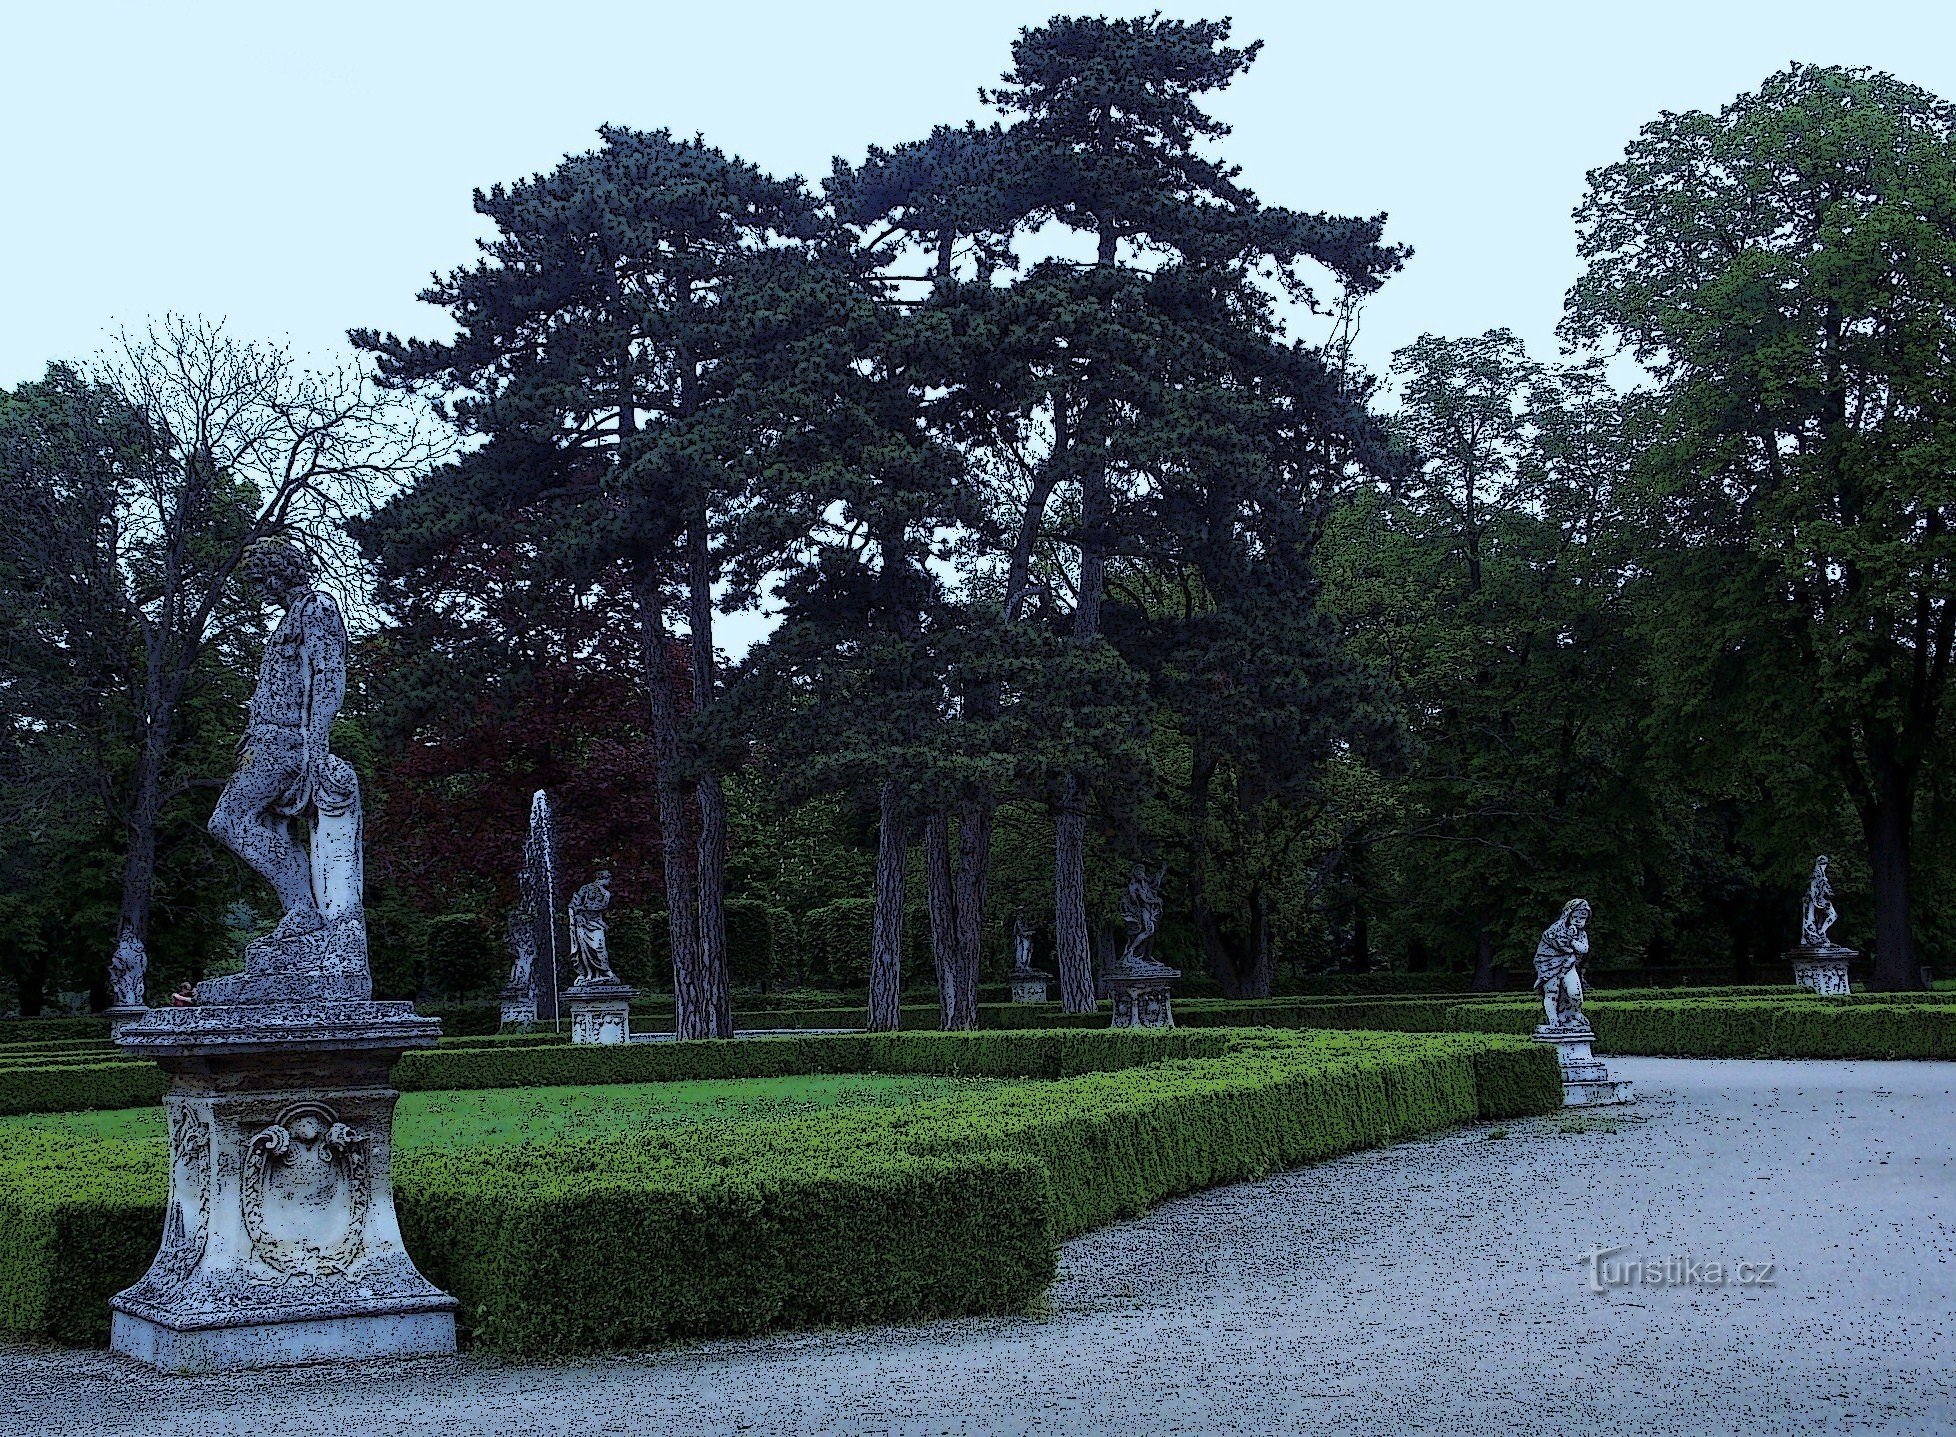 L'un des jardins historiques les plus importants de Moravie